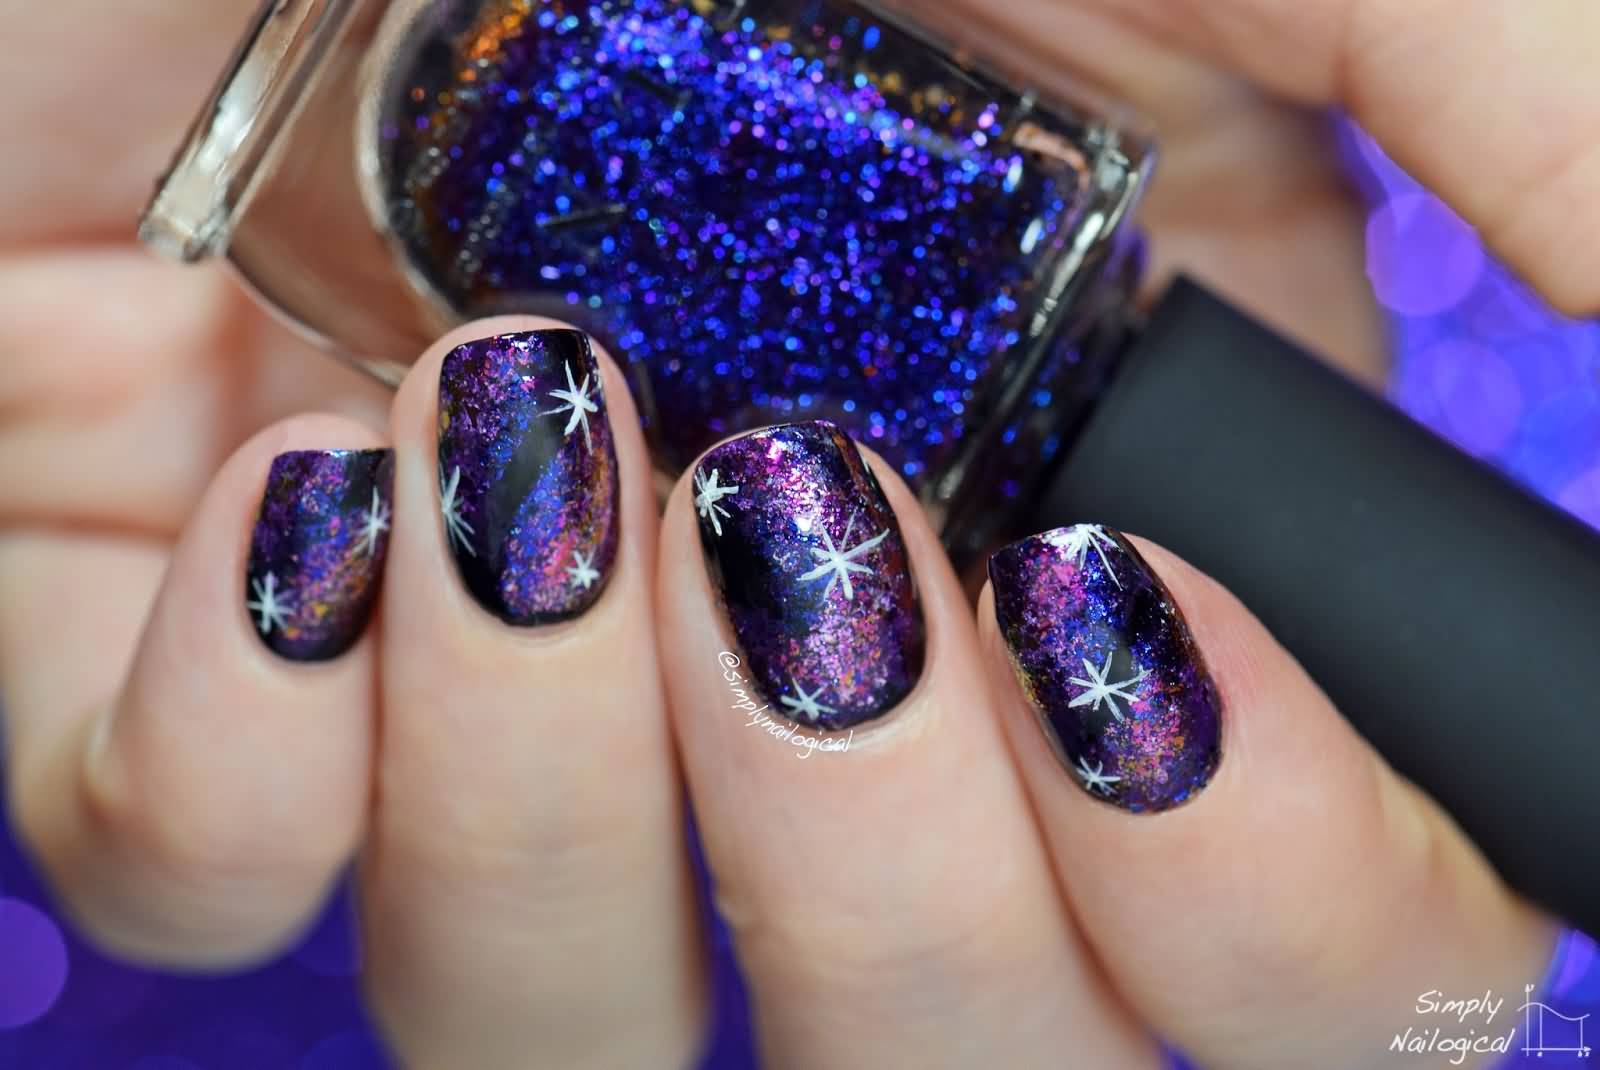 Purple Galaxy Nail Art With White Stars Design Idea